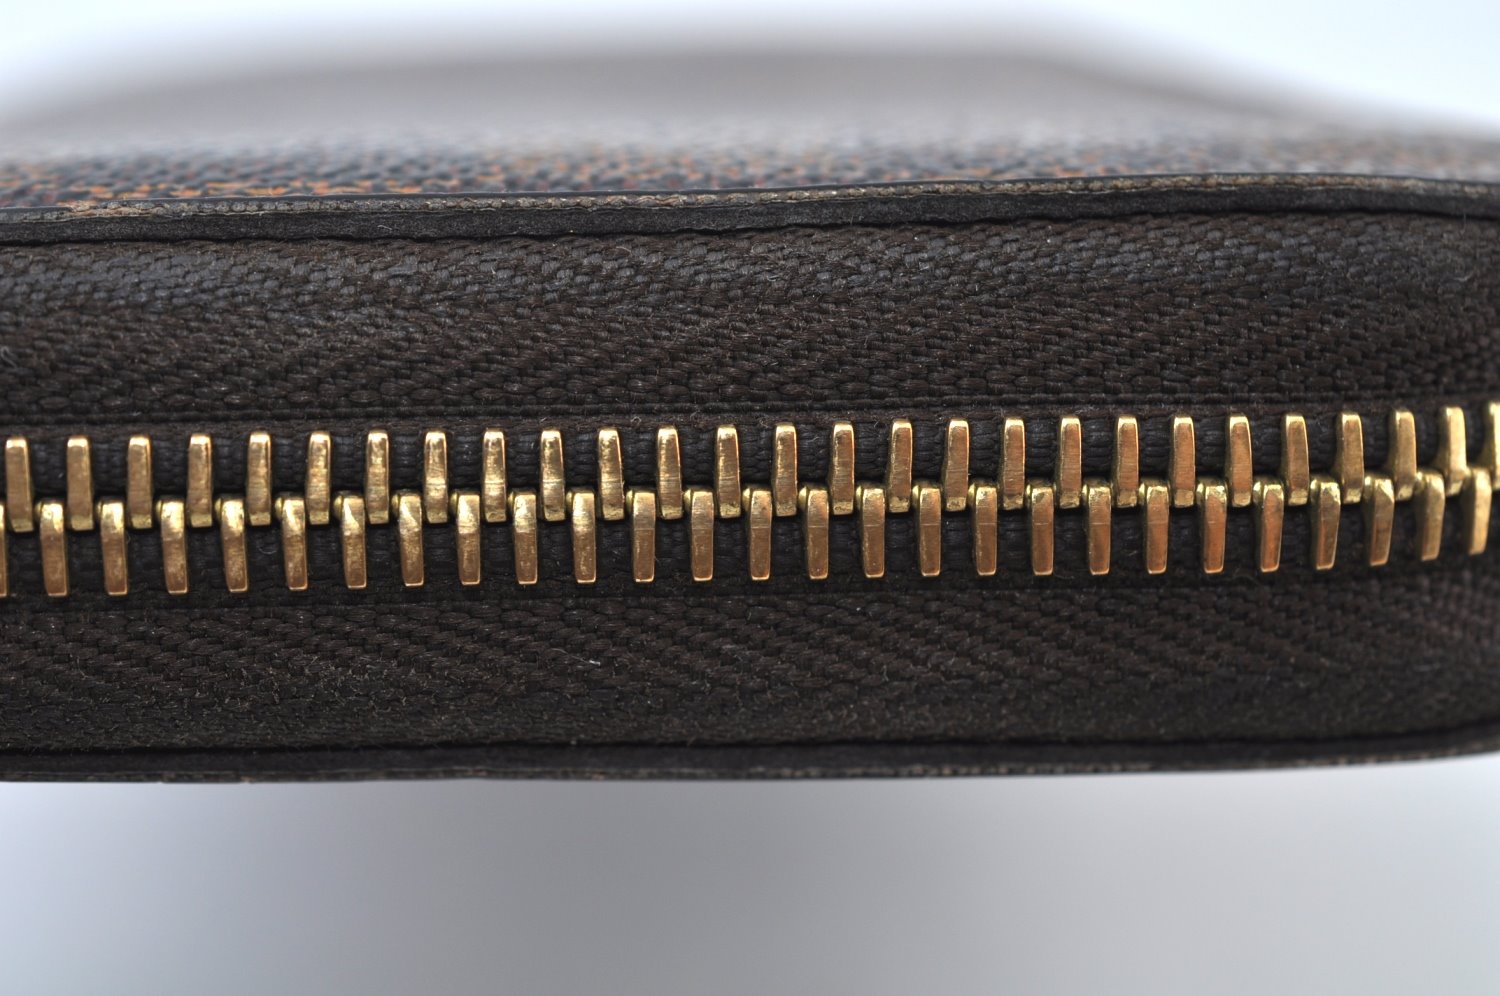 Authentic Louis Vuitton Damier Zippy Long Wallet Purse N60015 LV Junk K9808